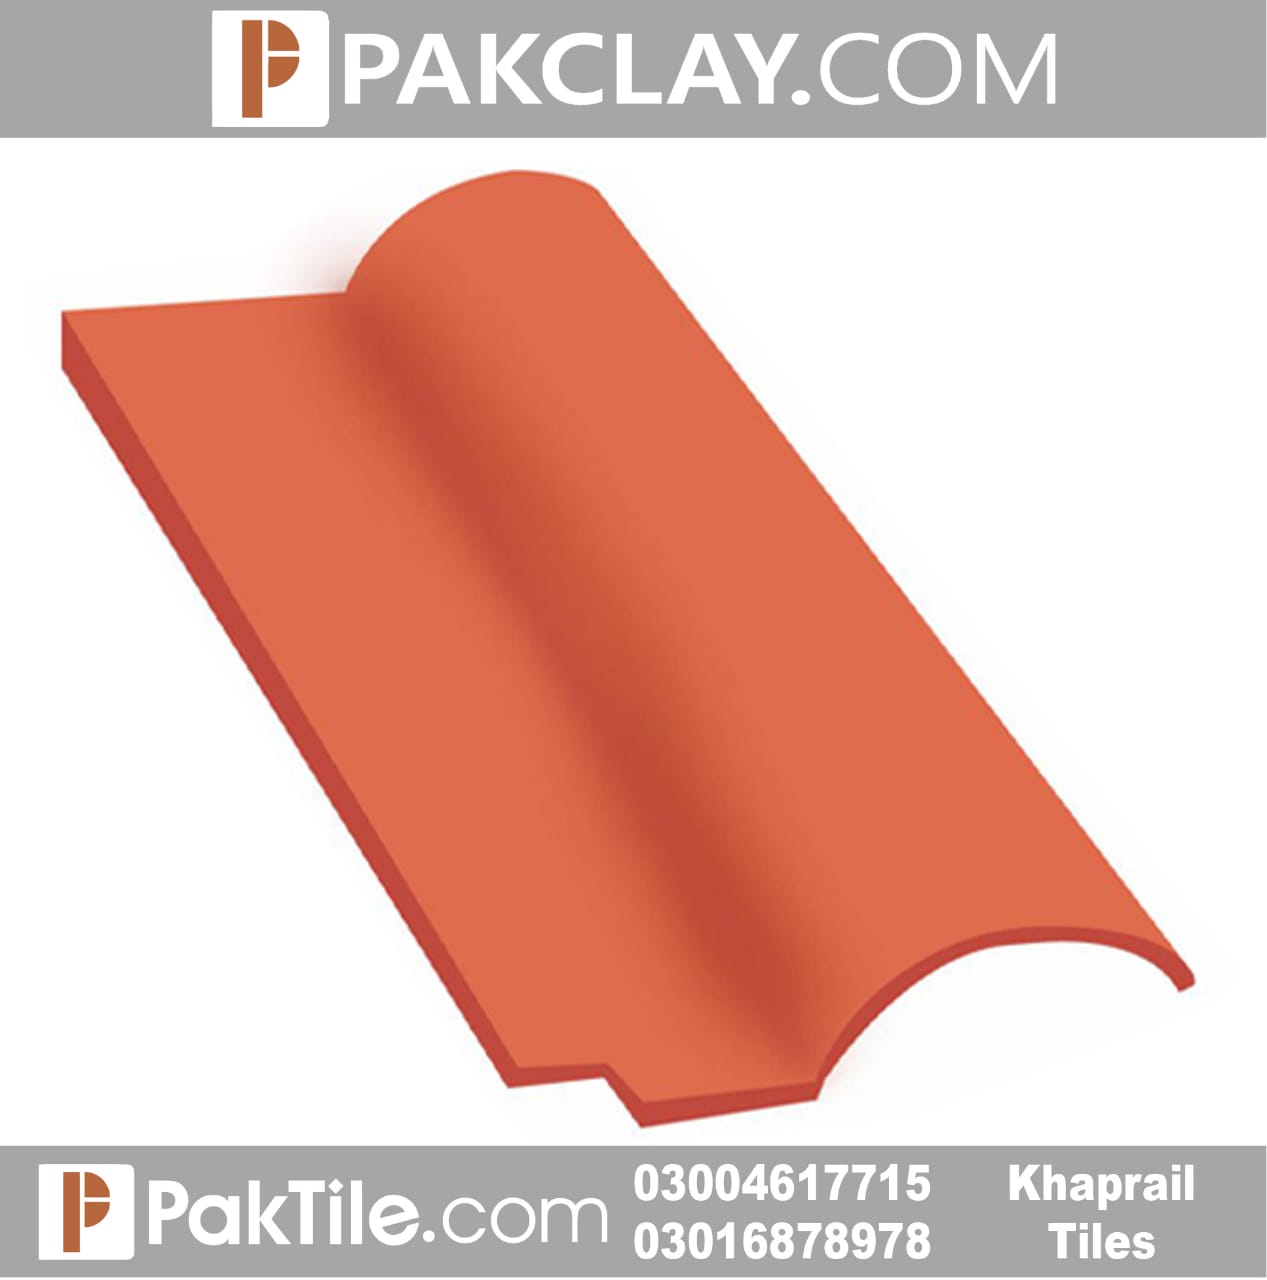 Pak Clay Khaprail Tiles Price